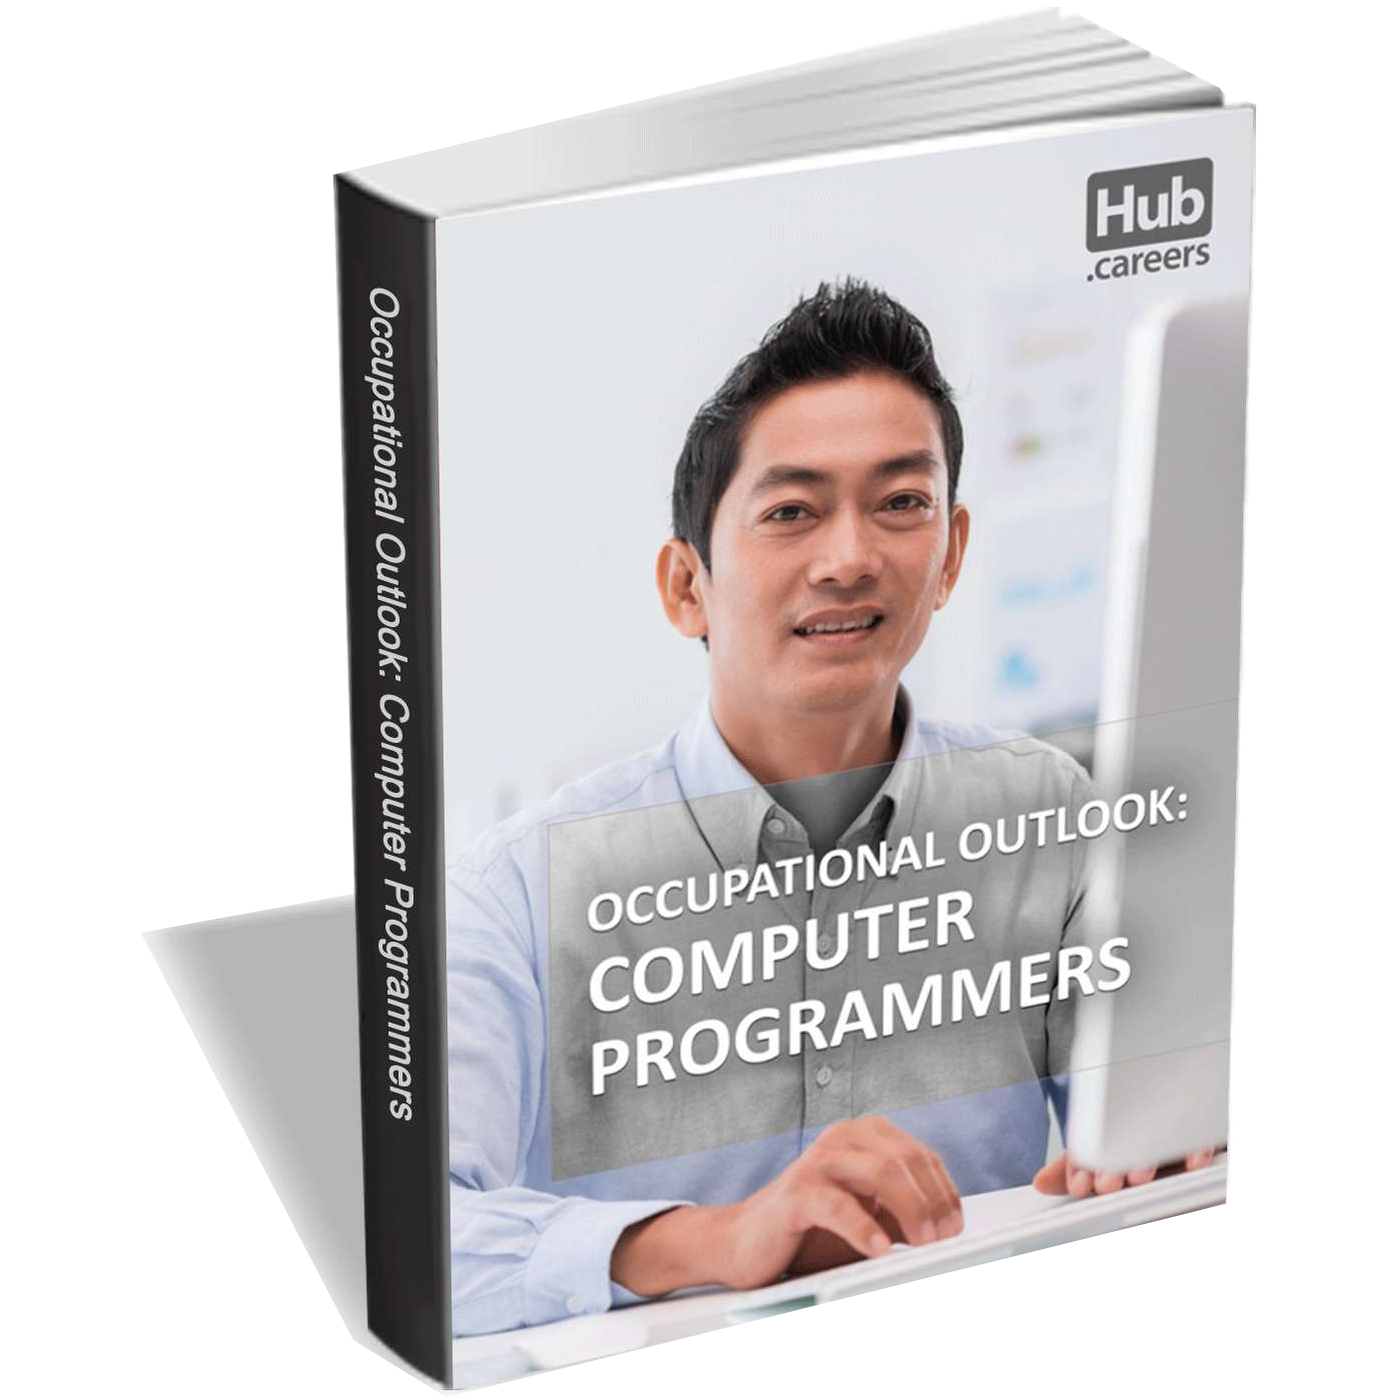 Computer Programmers - Occupational Outlook Screenshot